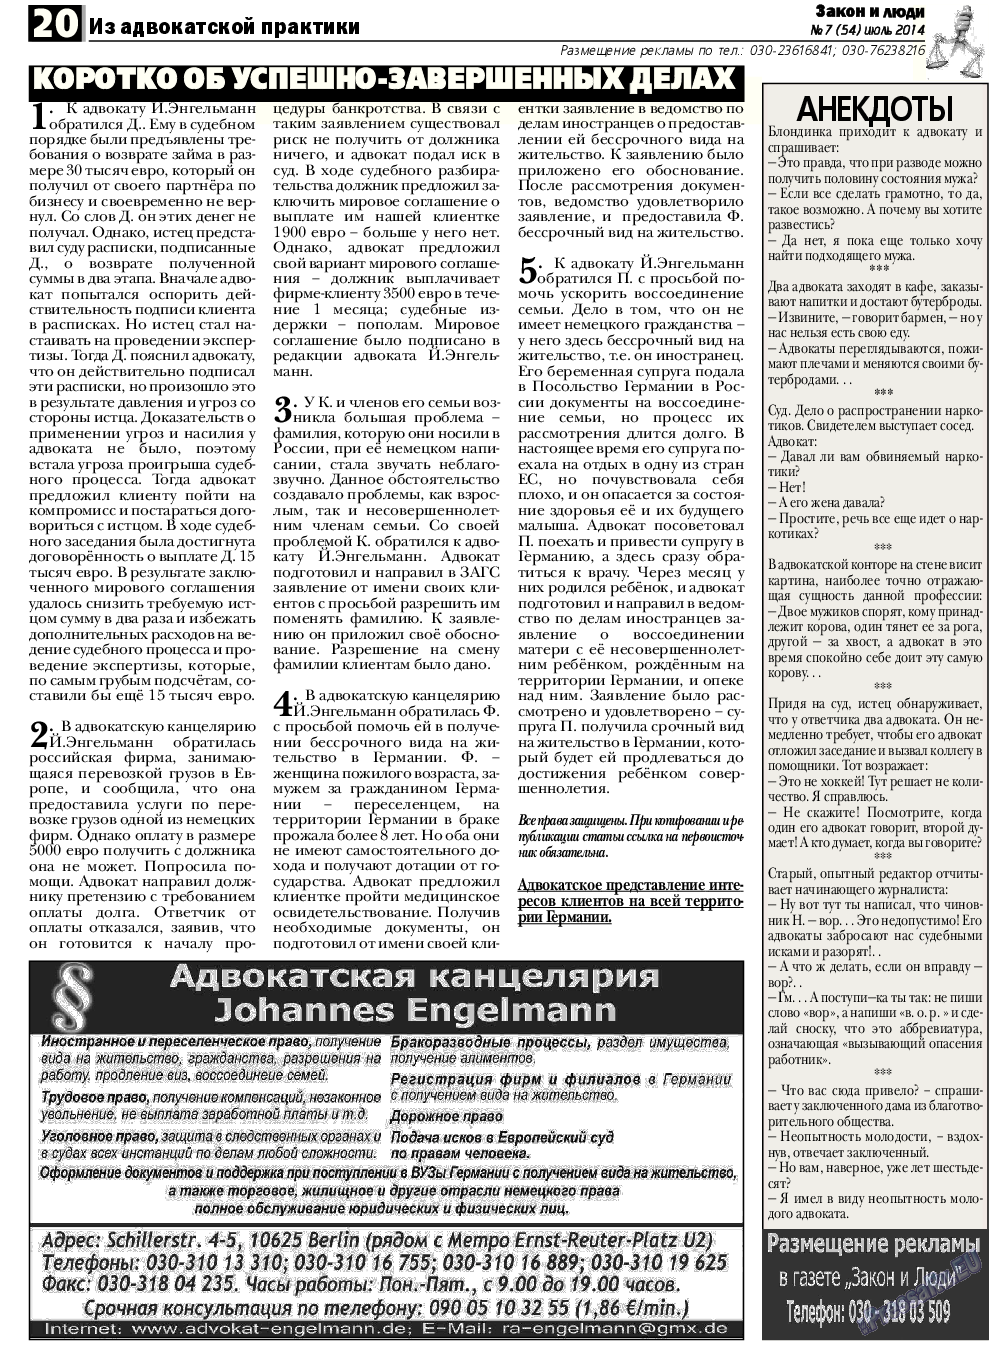 Закон и люди, газета. 2014 №7 стр.20